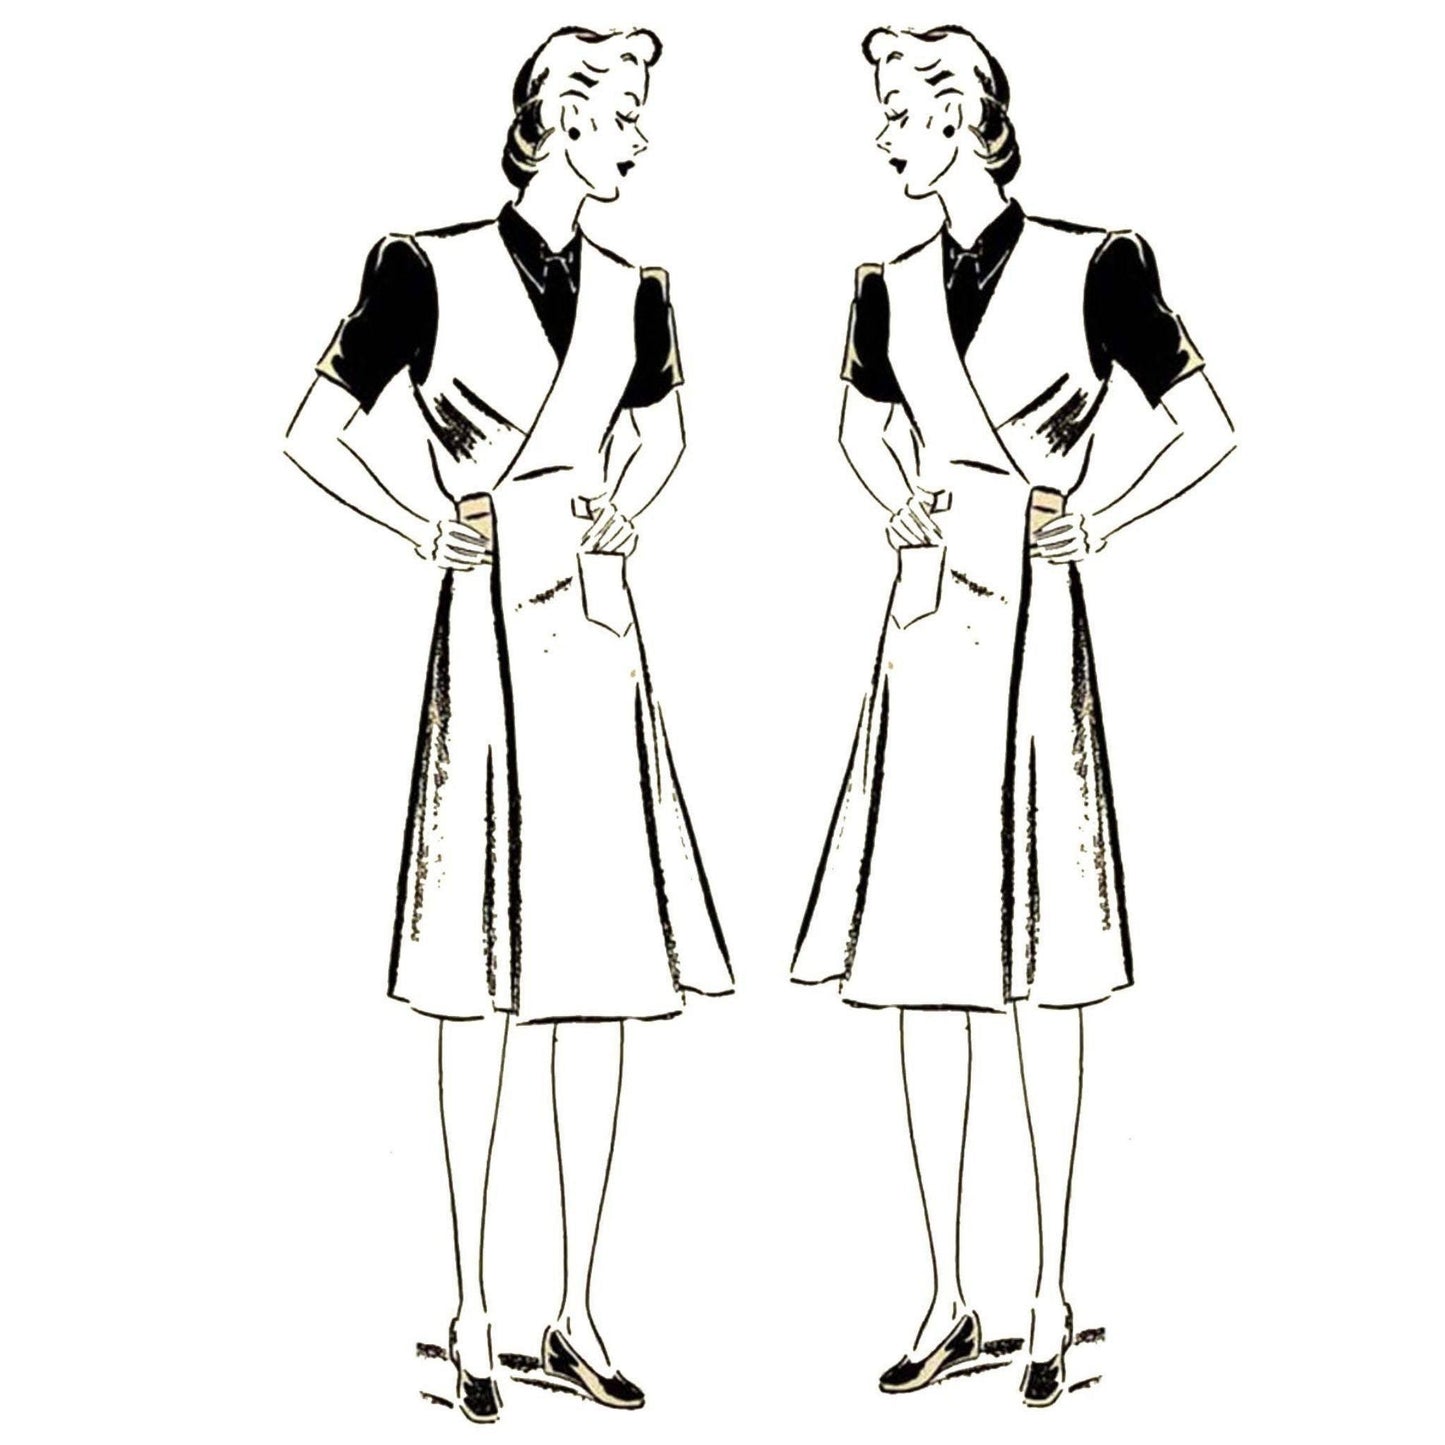 Women wearing overalls